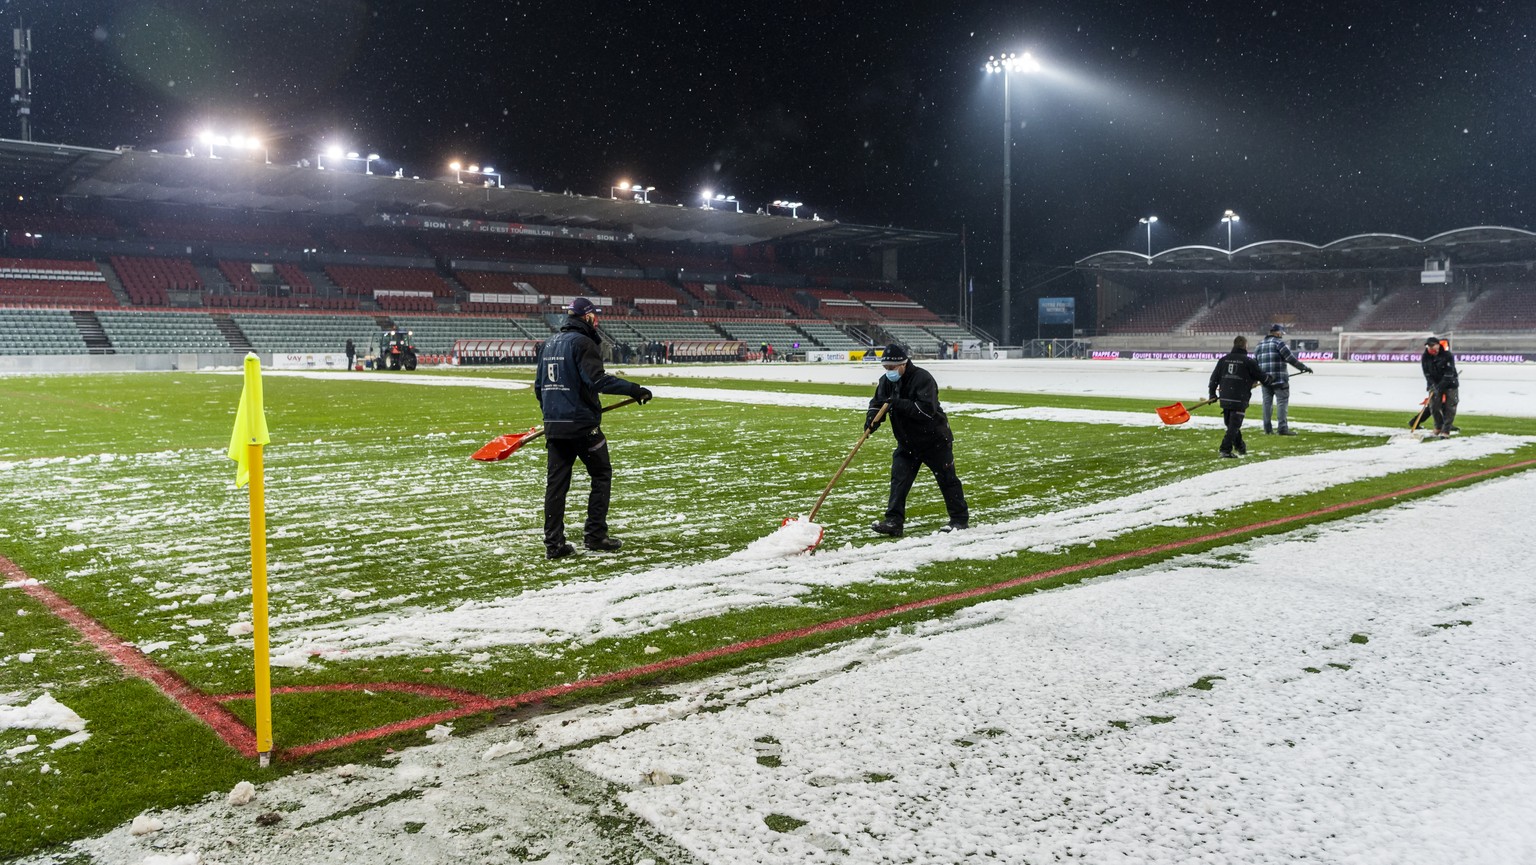 Des personnes enlevent la neige sur le terrain, lors de la rencontre de football a huis clos de Super League entre FC Sion et FC Luzern le samedi 12 decembre 2020 au stade de Tourbillon a Sion. (KEYST ...